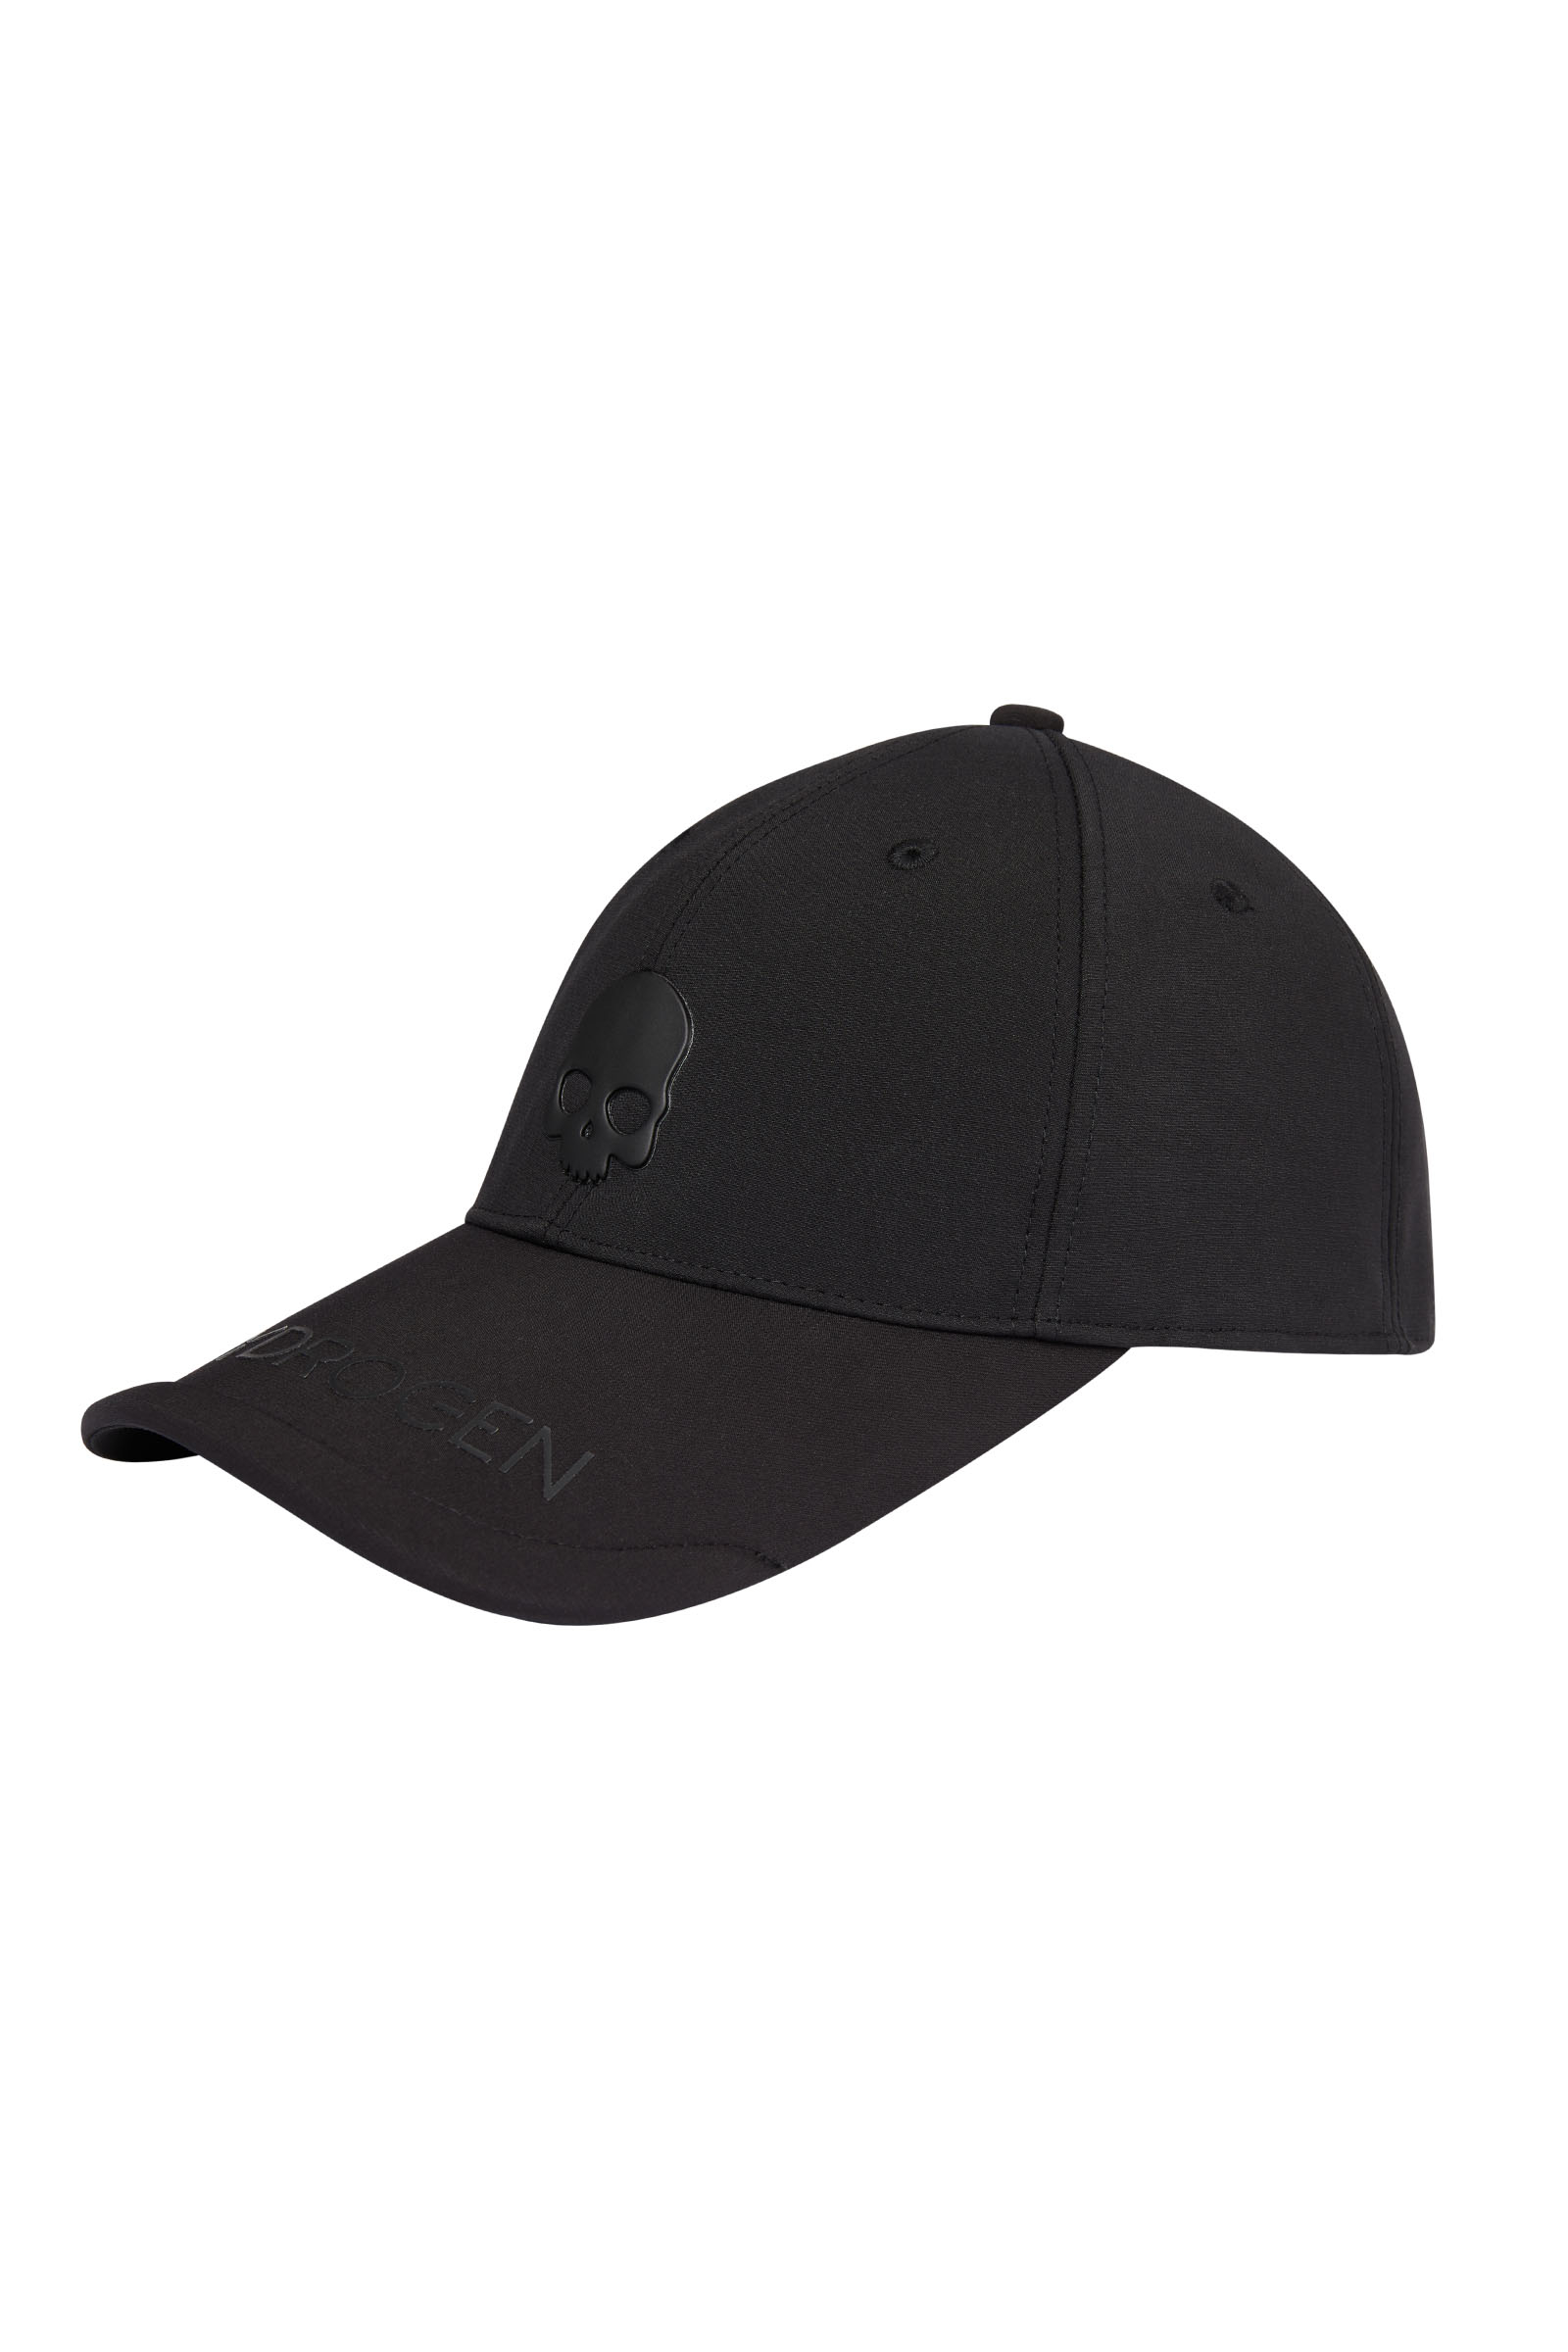 UNISEX BALL CAP - BLACK - Hydrogen - Luxury Sportwear